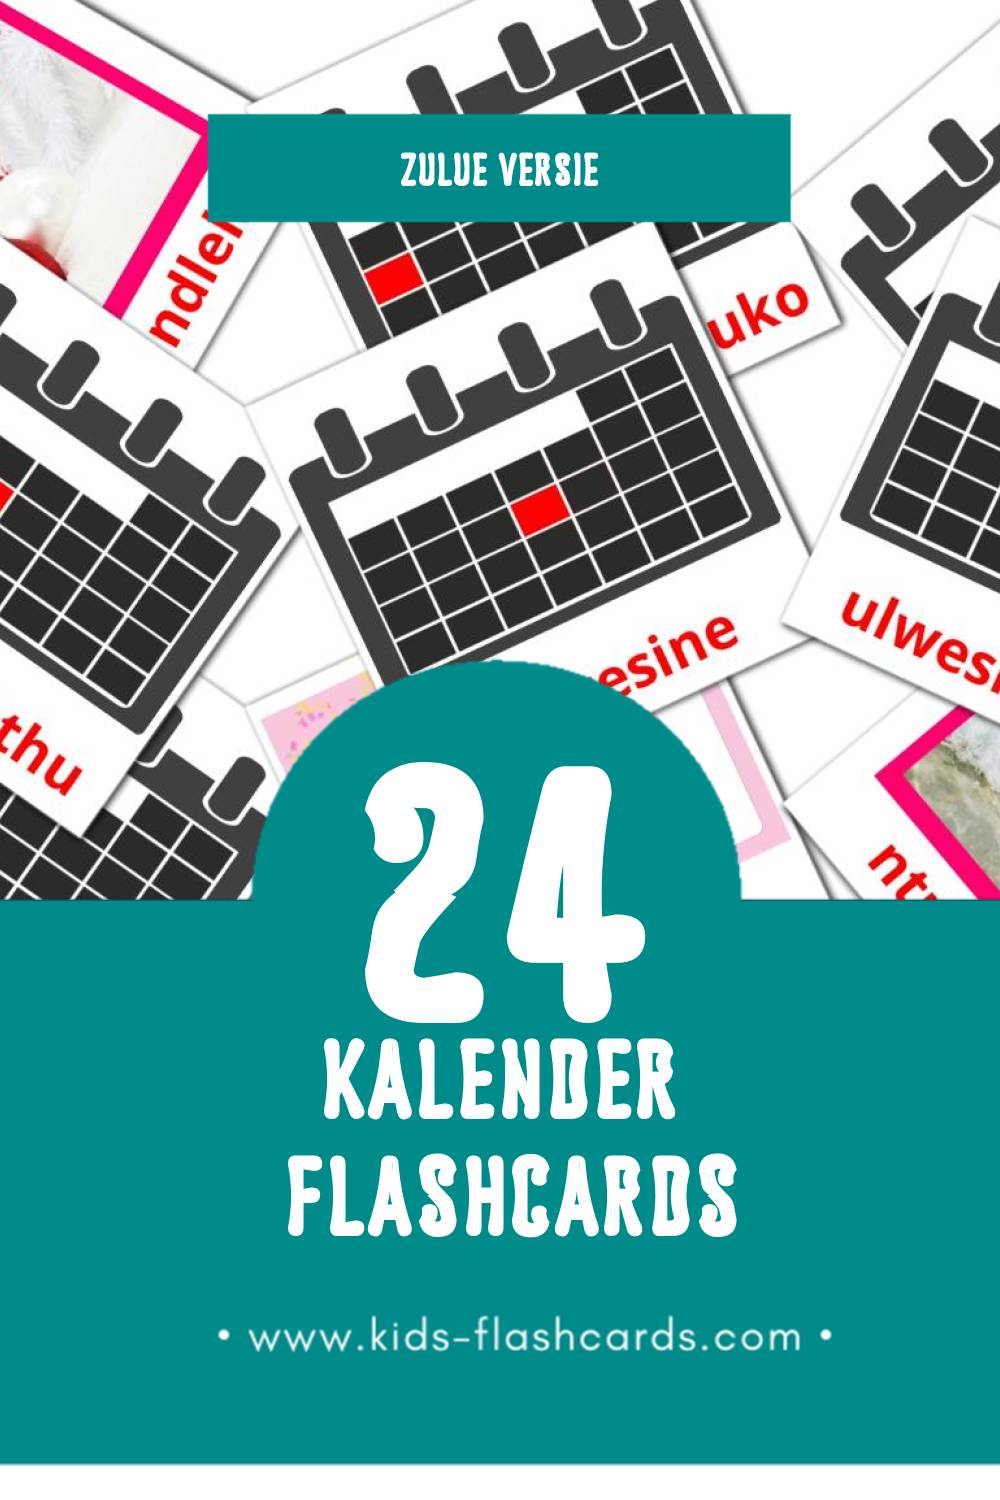 Visuele Ikhalenda Flashcards voor Kleuters (24 kaarten in het Zulu)